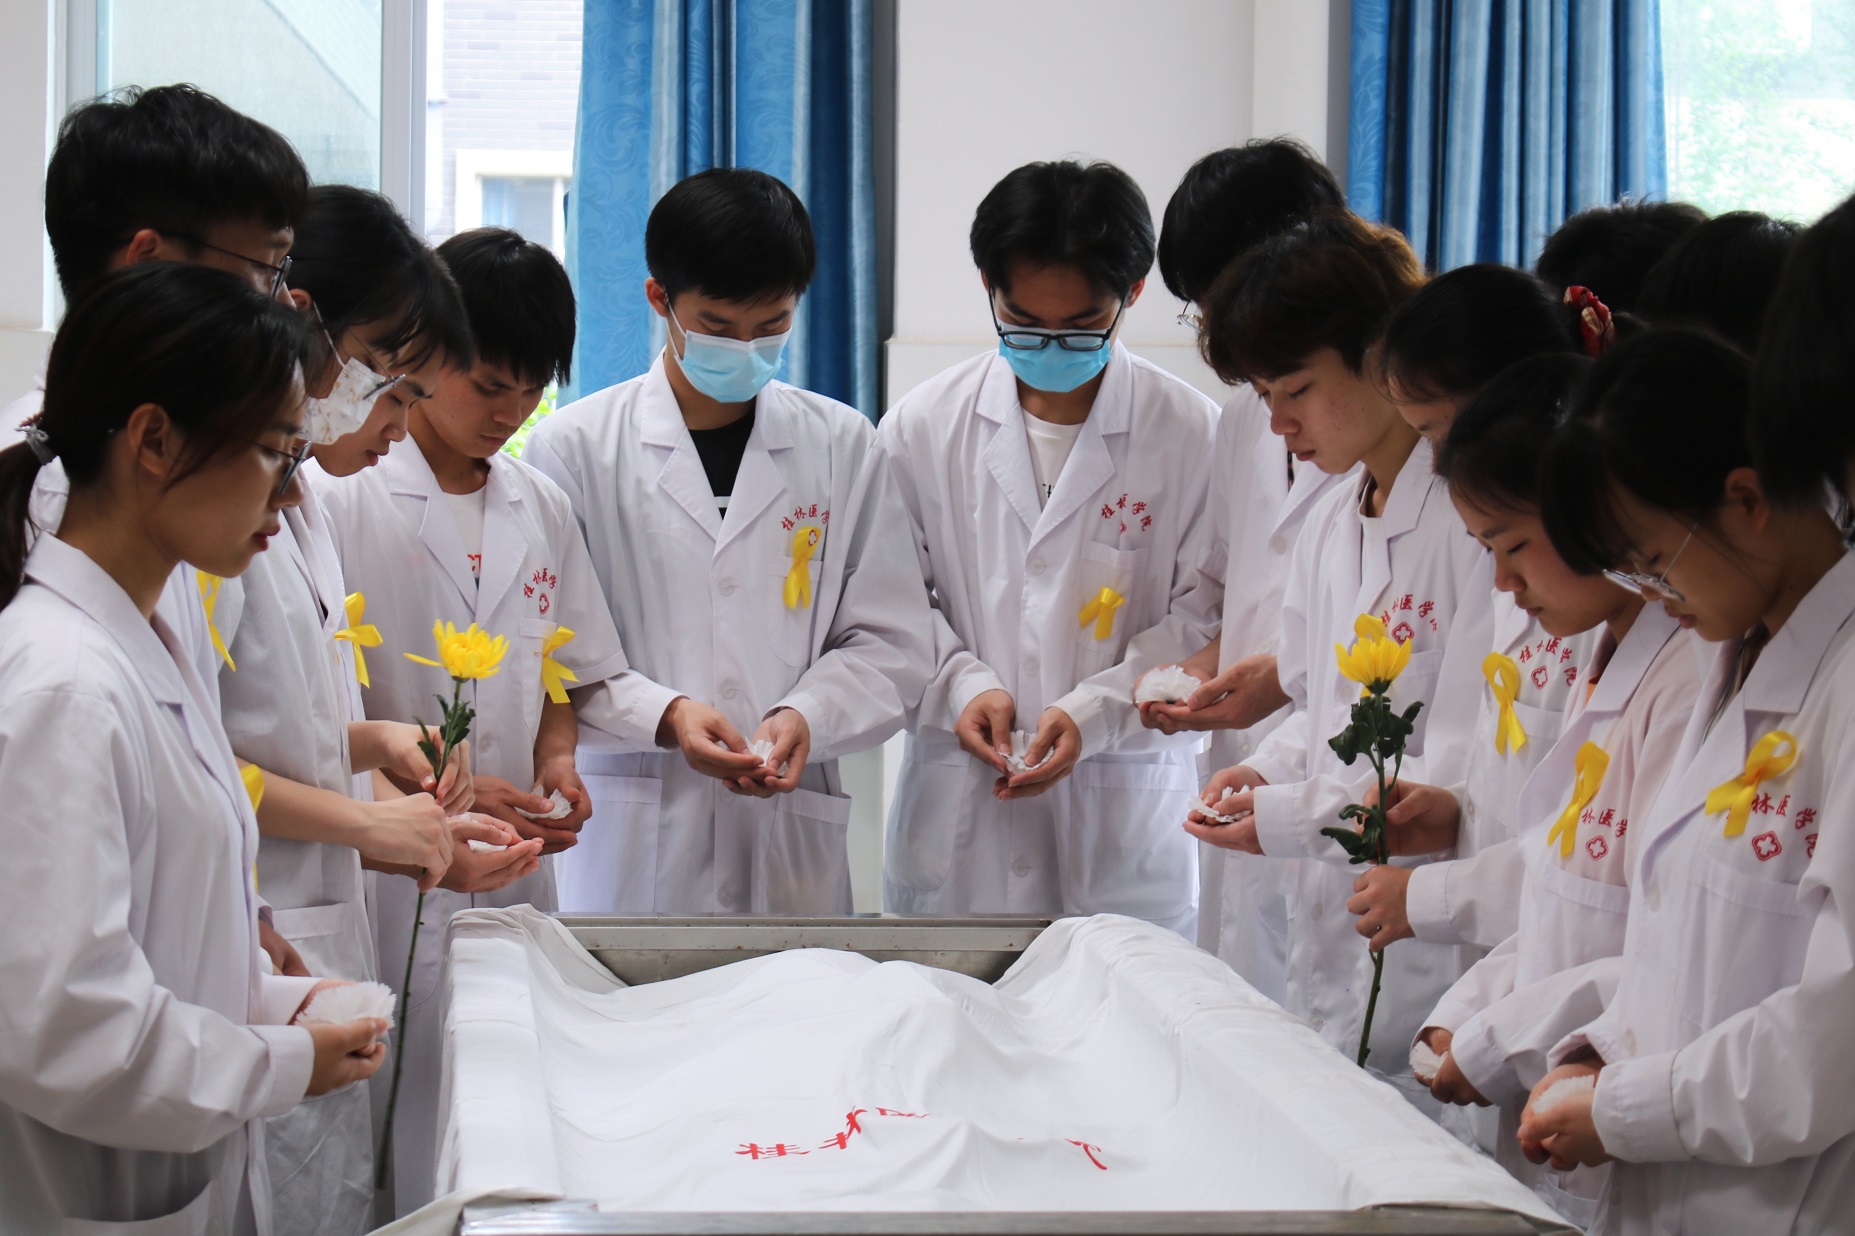 湖南工程职业技术学院一天内6名学子登记遗体器官捐献-掌上长沙